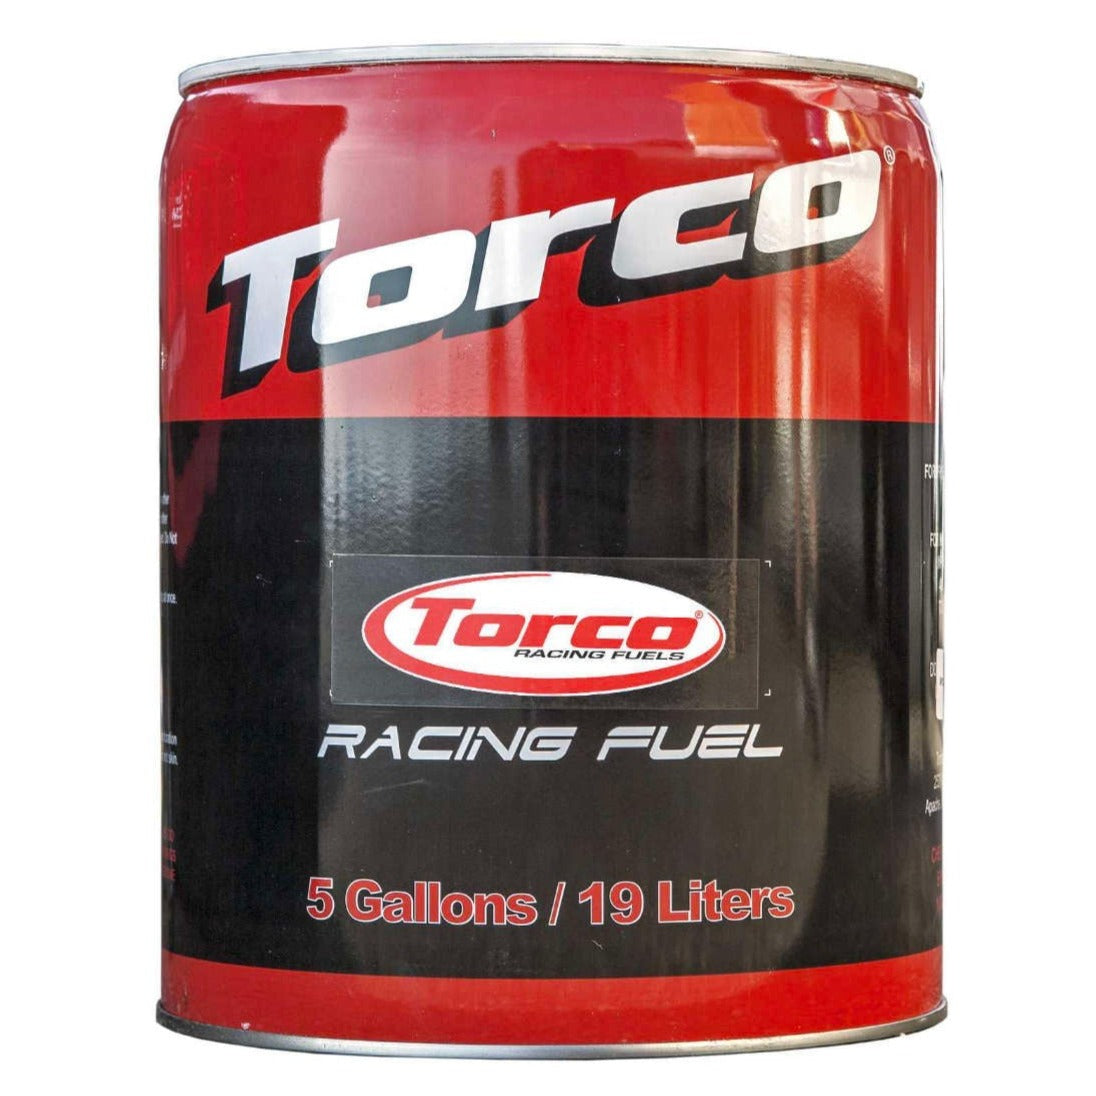 Torco Race Fuel 108 Unleaded